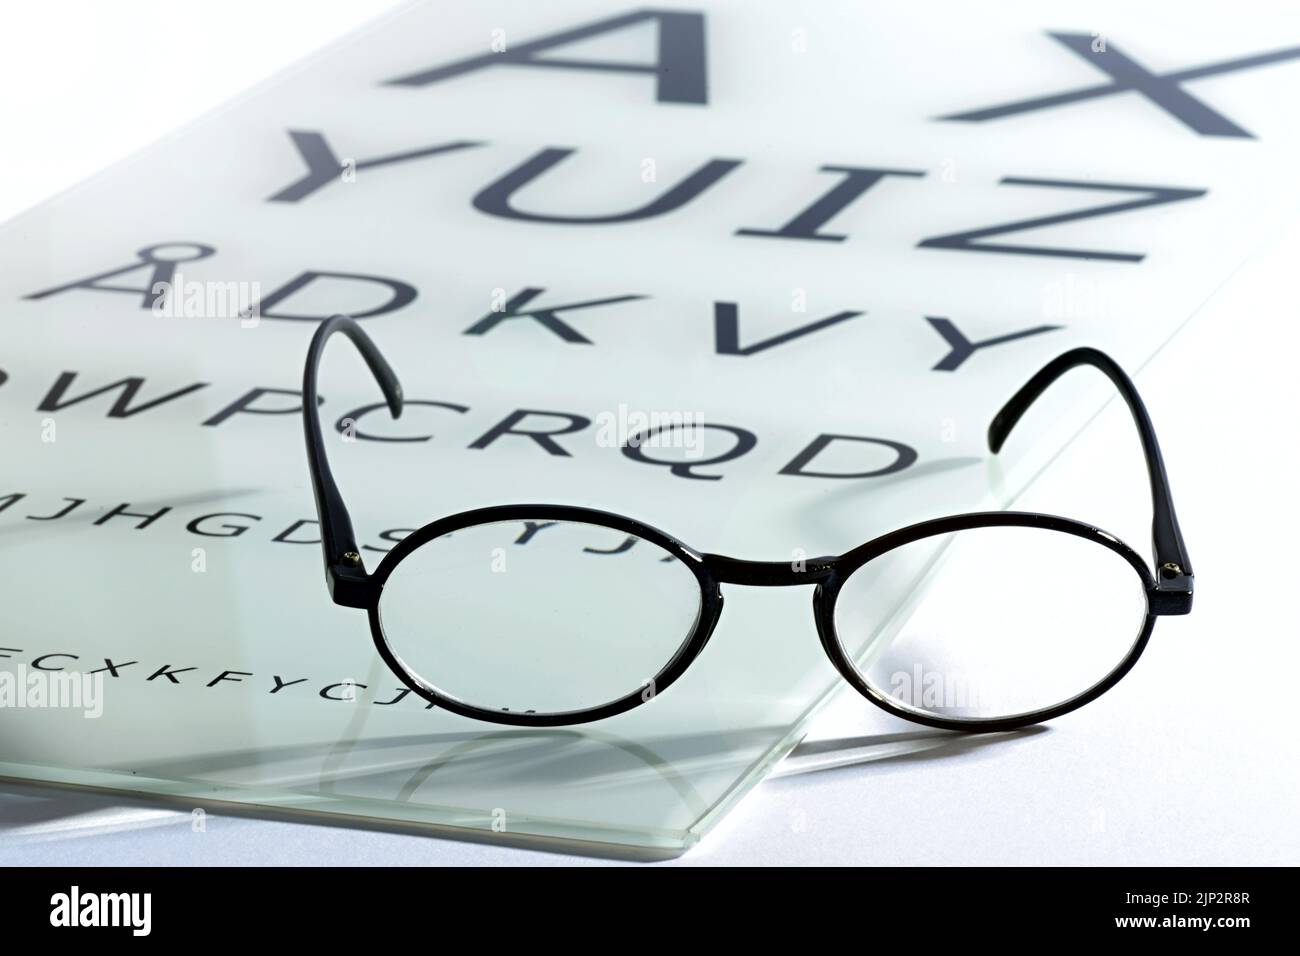 Brille, Augenlicht, Augentest, optometrie, Augenbrille, Brillen, Brillen, Sehhilfen, Augentests Stockfoto